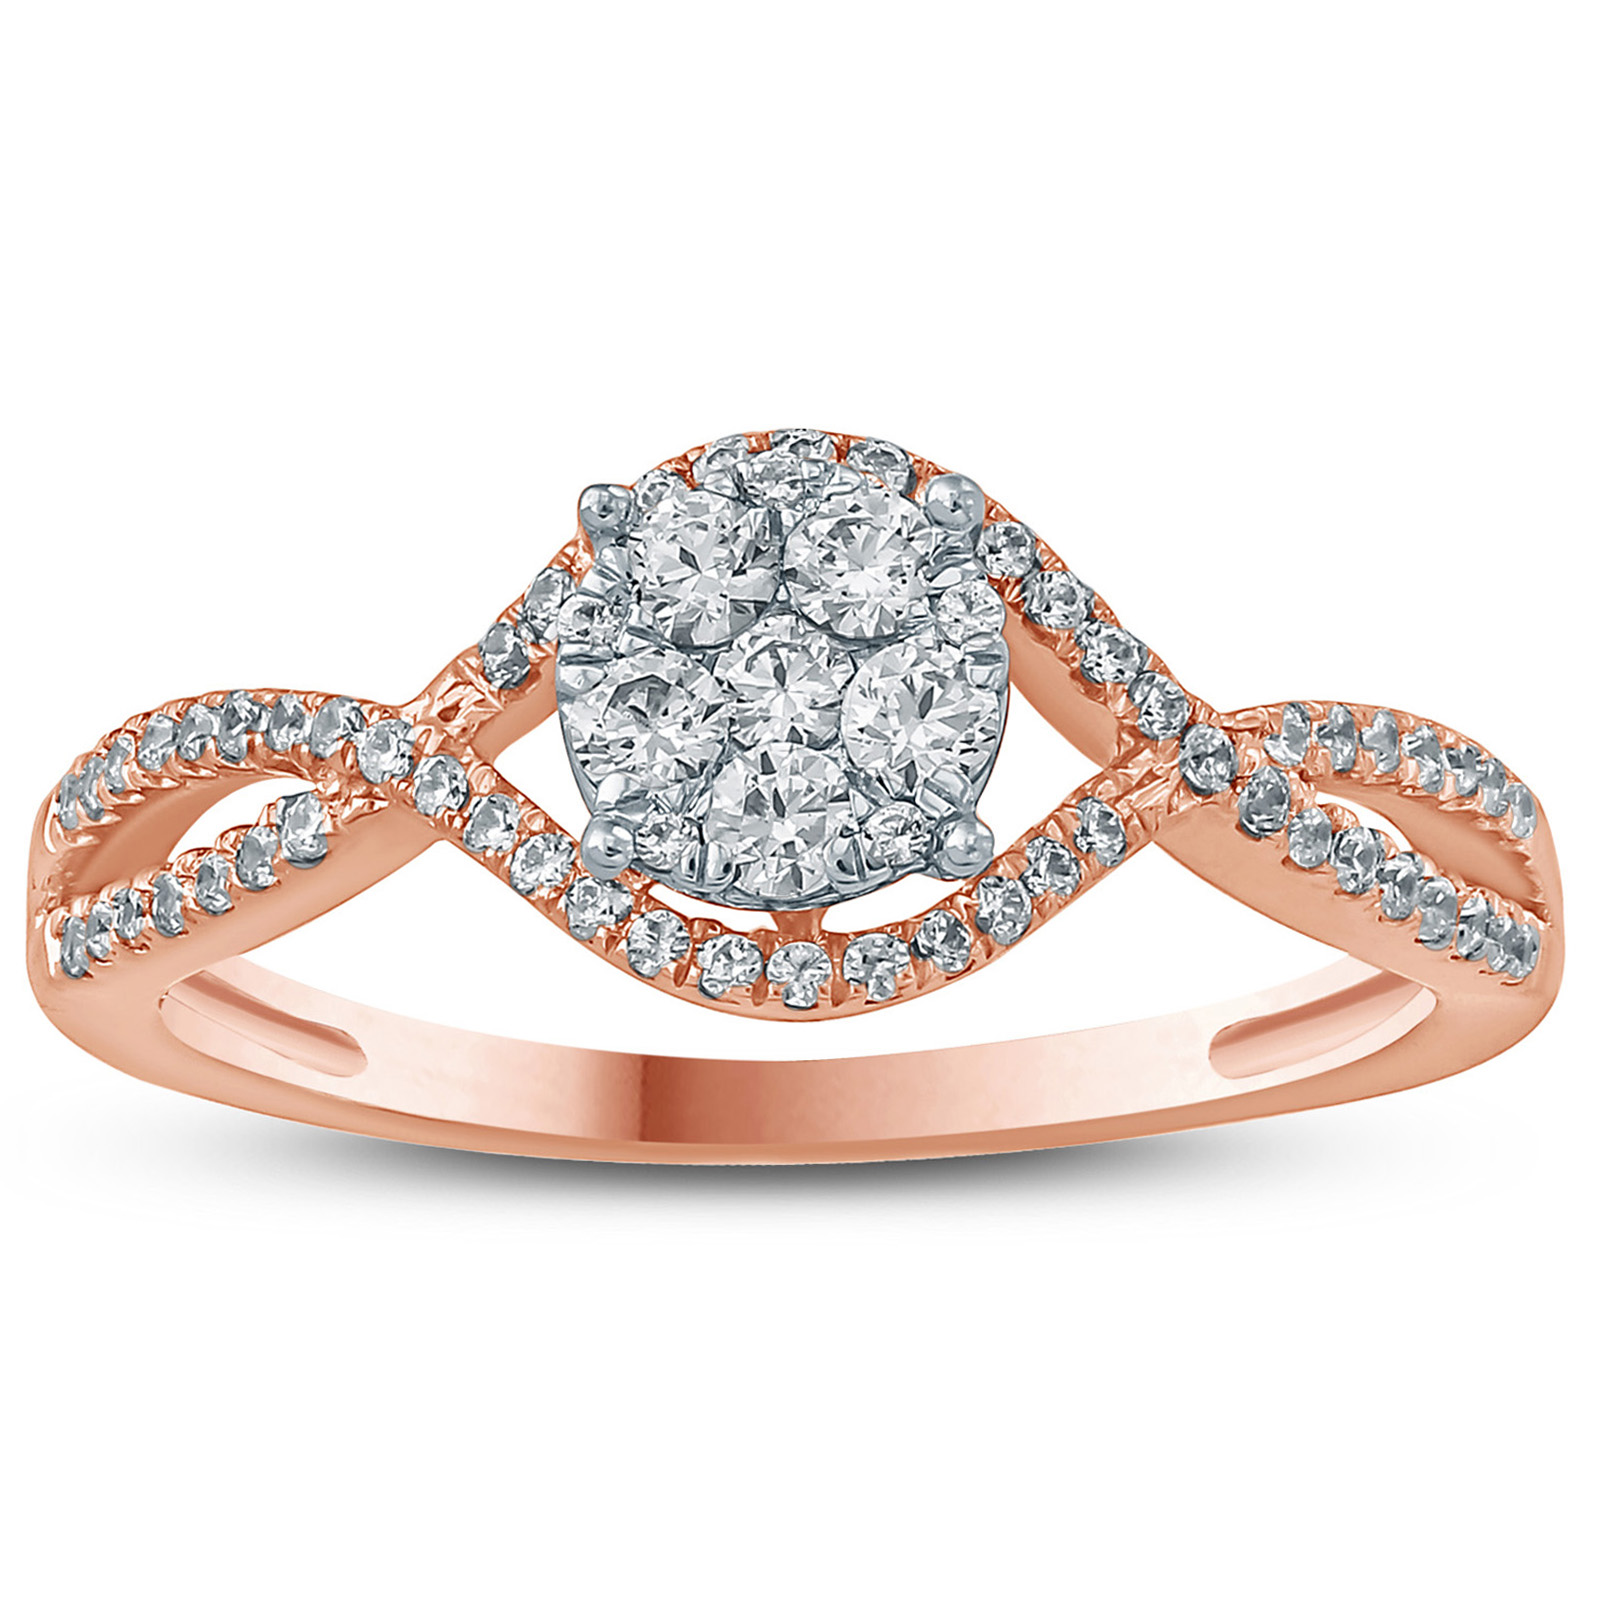 1/2 Carat TW Diamond Ring in 10K Rose Gold